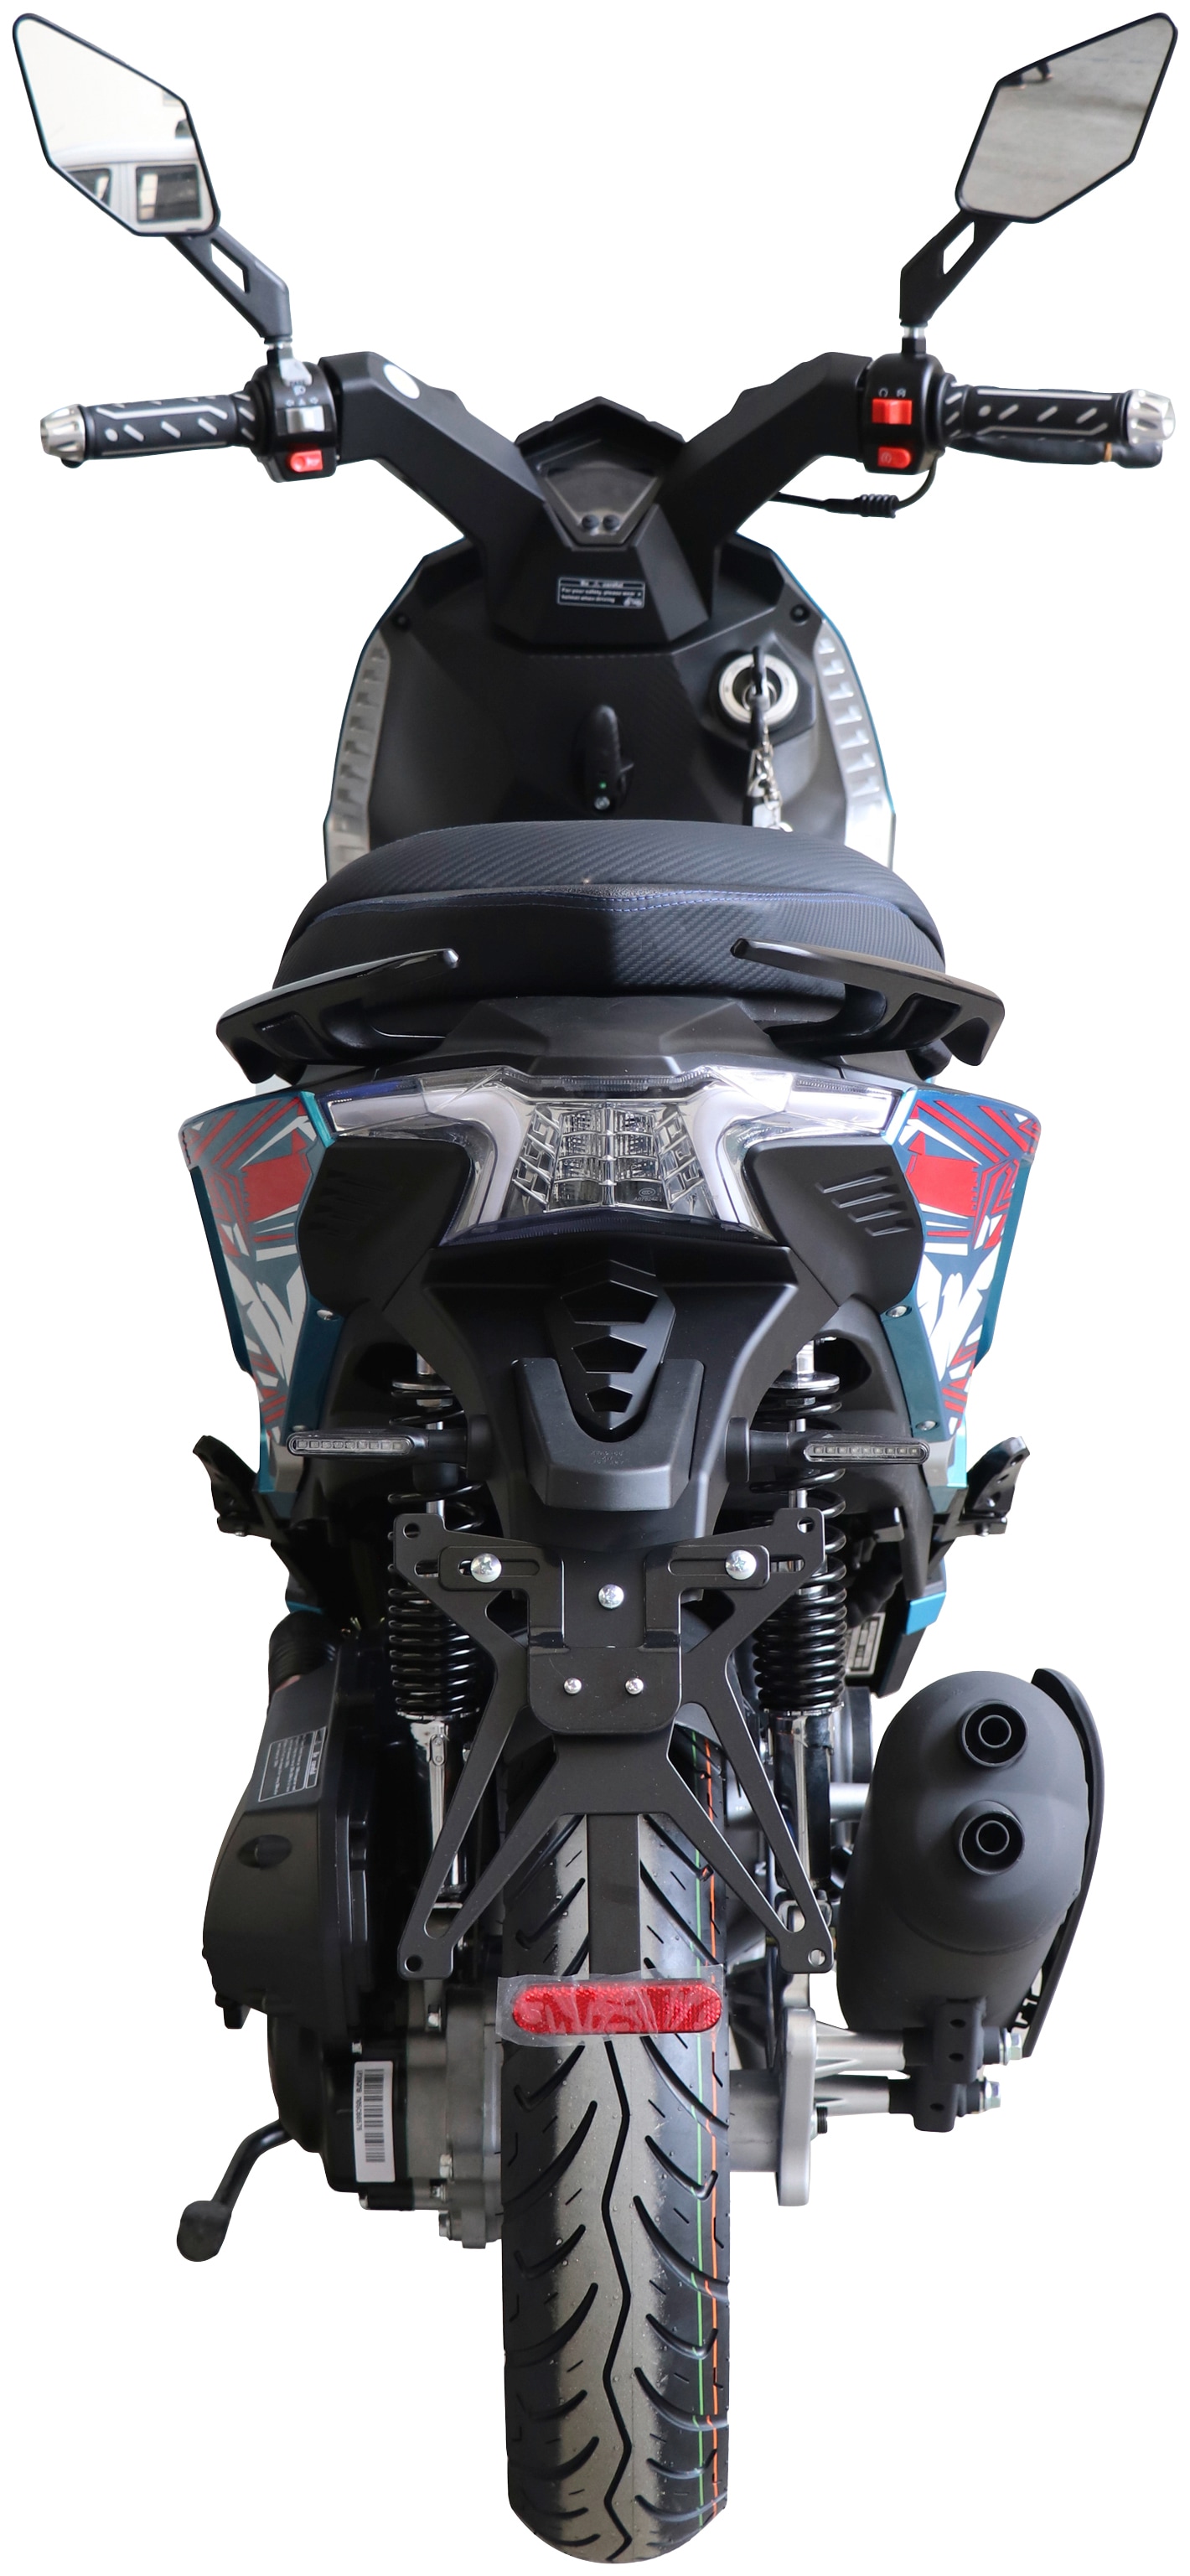 Alpha Motors Motorroller »SHARK«, 50 cm³, 45 km/h, Euro 5, 3 PS, mit integr. Alarmanlage, Keyless-System und USB-Anschluss